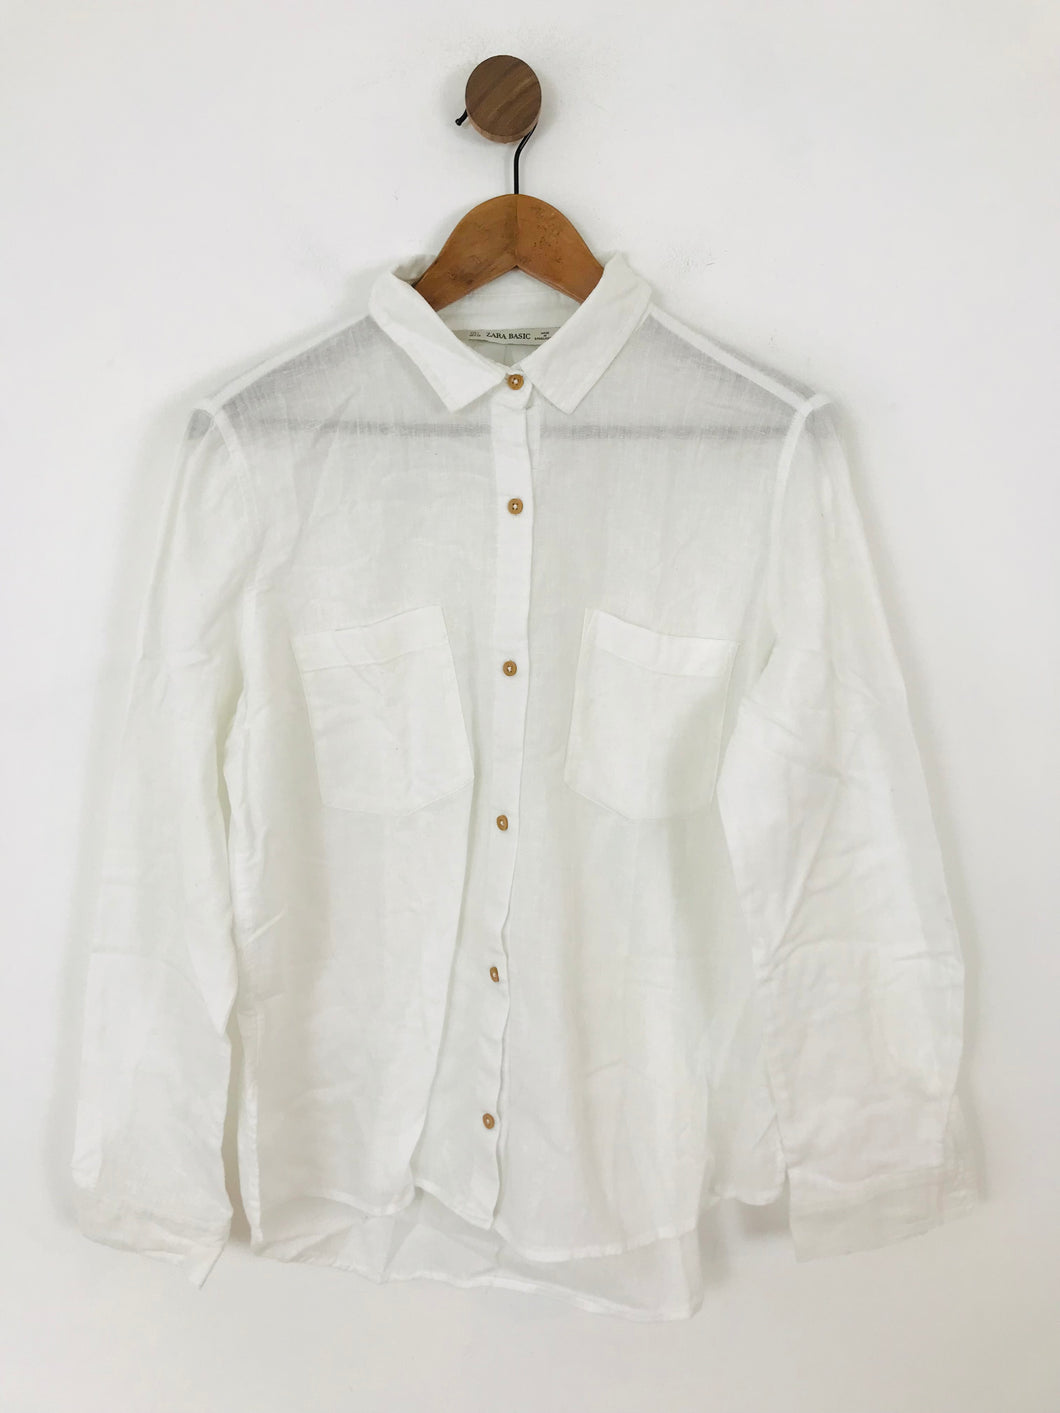 Zara Women's Linen Long Sleeve Button-Up Shirt | L UK14 | White